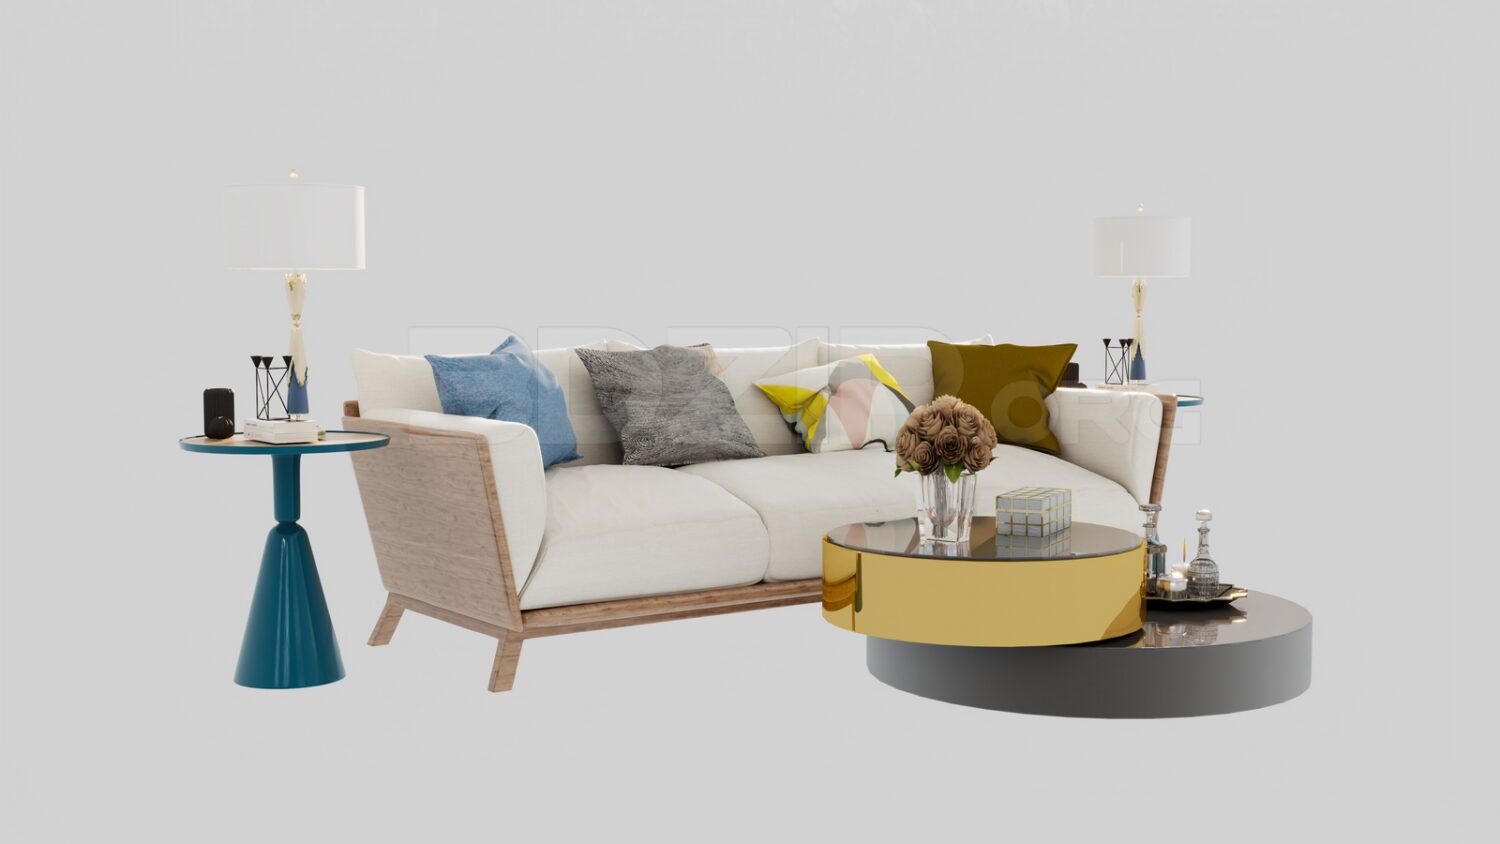 4175. Free 3D Sofa Model Download